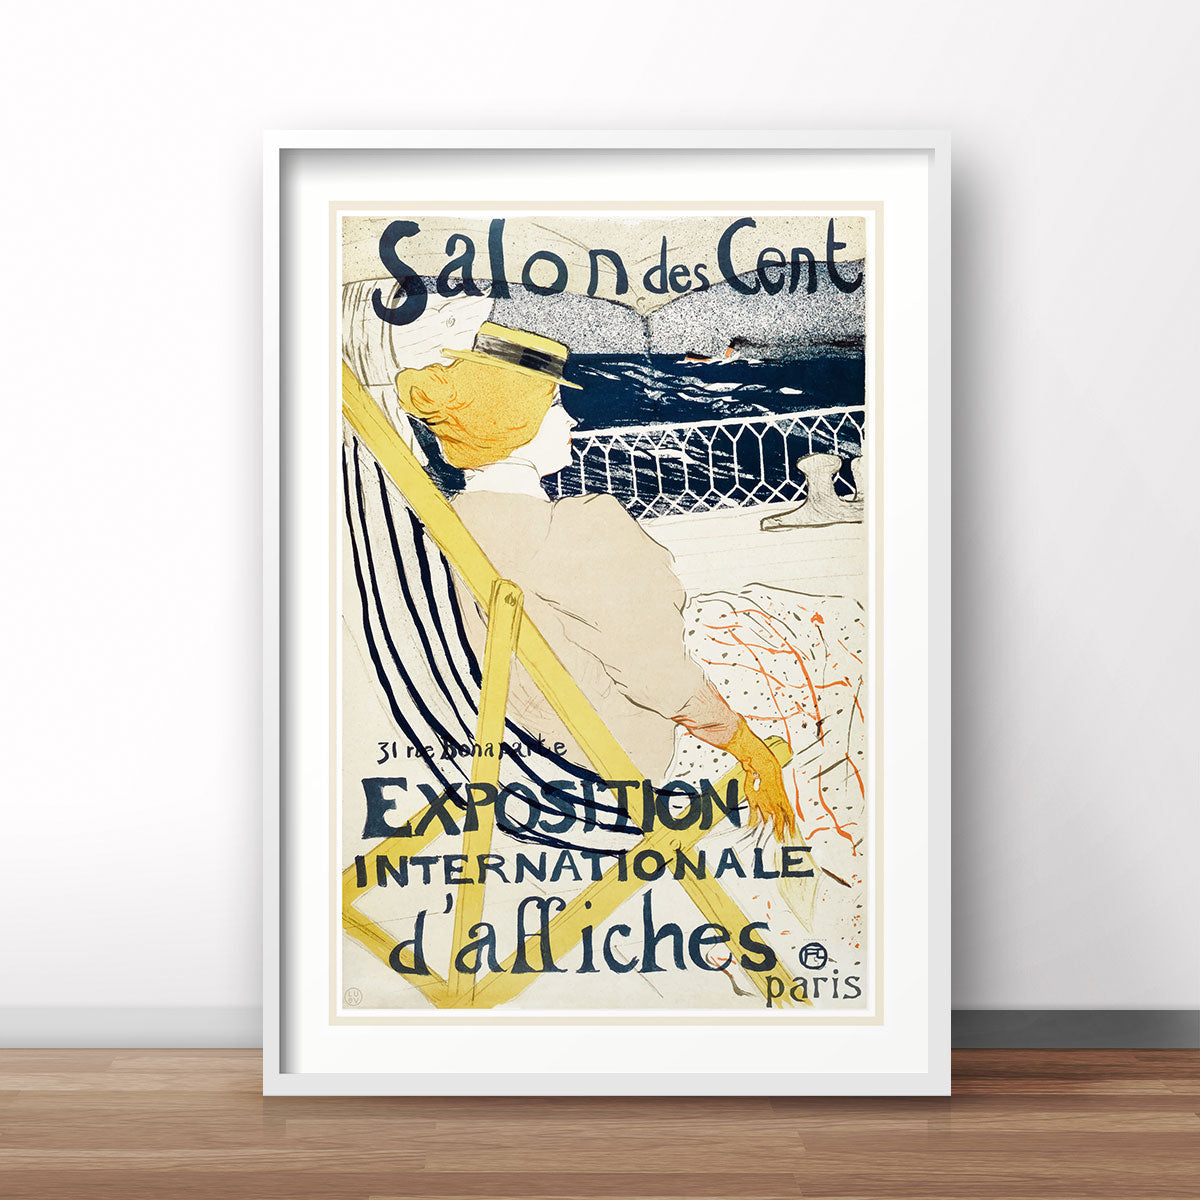 Salon des Cent Paris vintage retro advertisment framed from Places We Luv